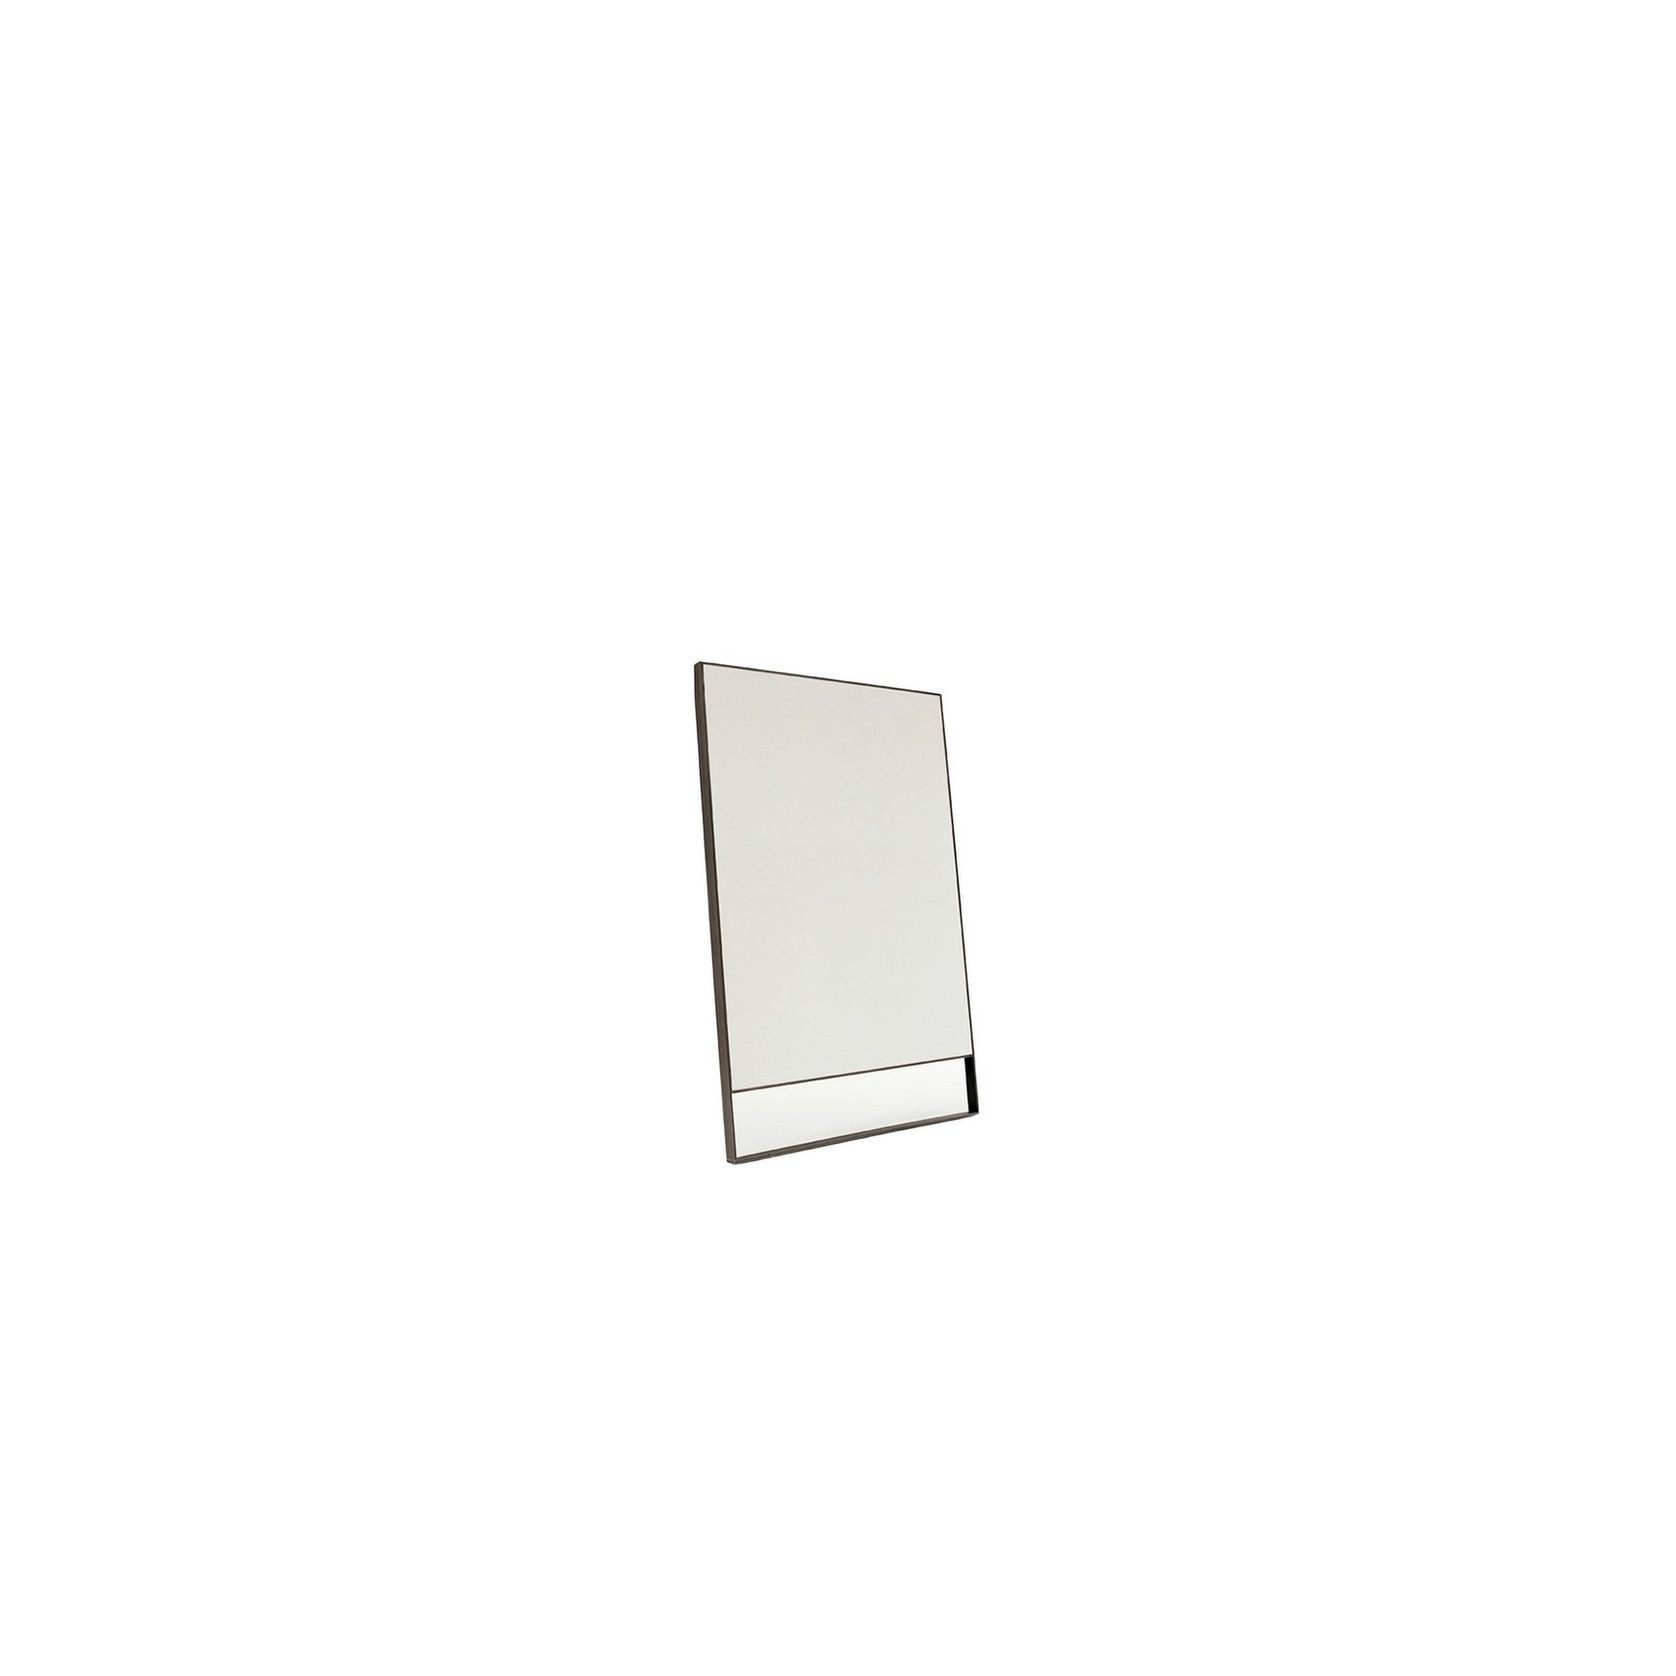 Psiche 120cm | Mirror gallery detail image